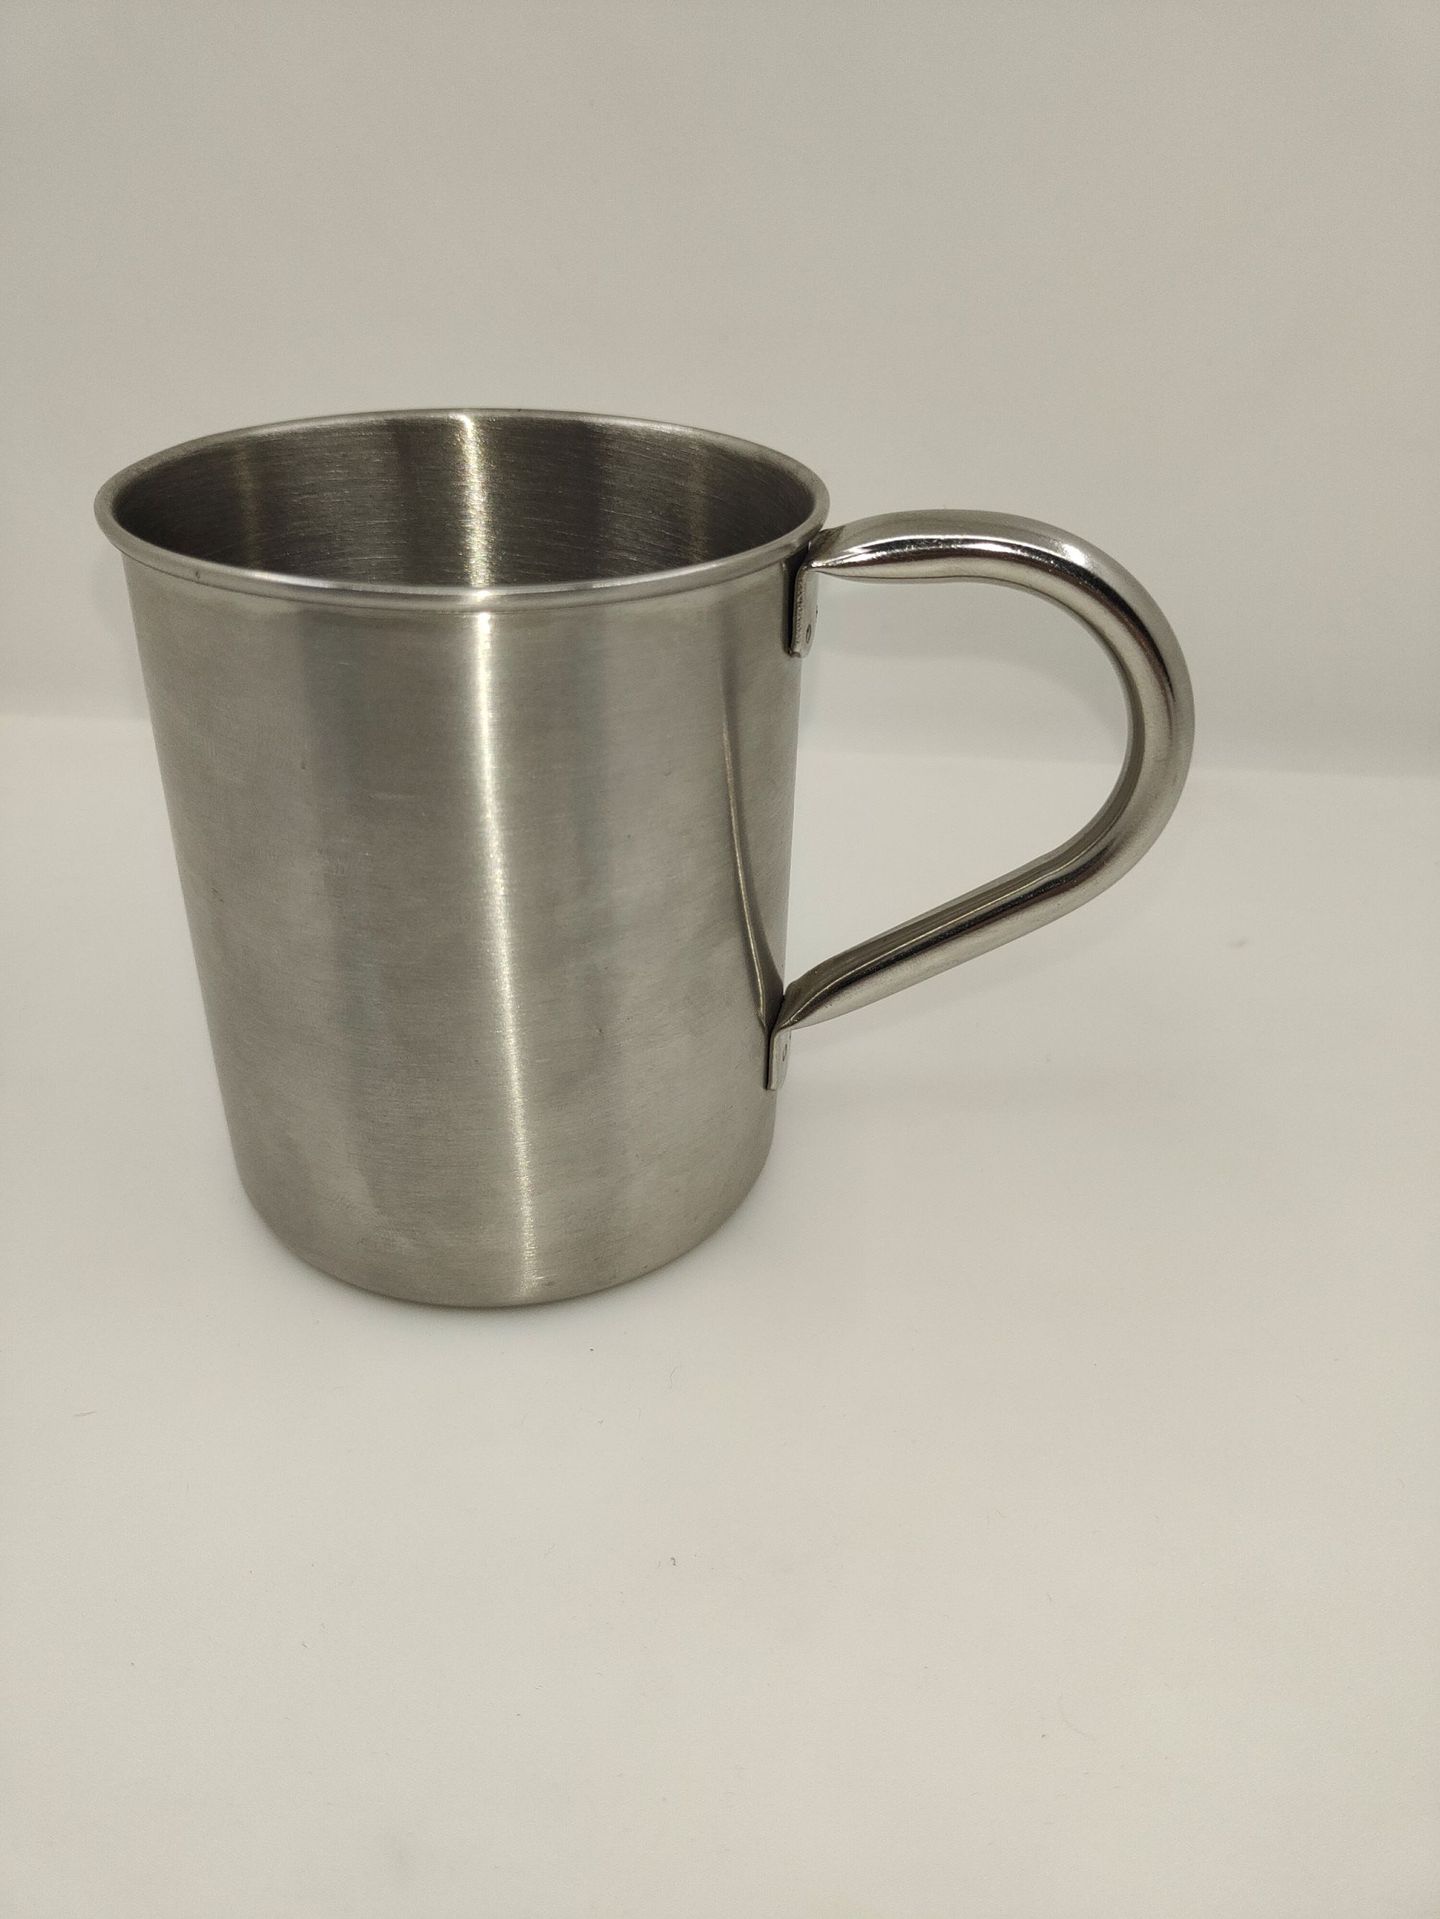 厂家直销镀铜单层卷边杯  镀铜直身杯 304不锈钢杯 咖啡杯 马克杯